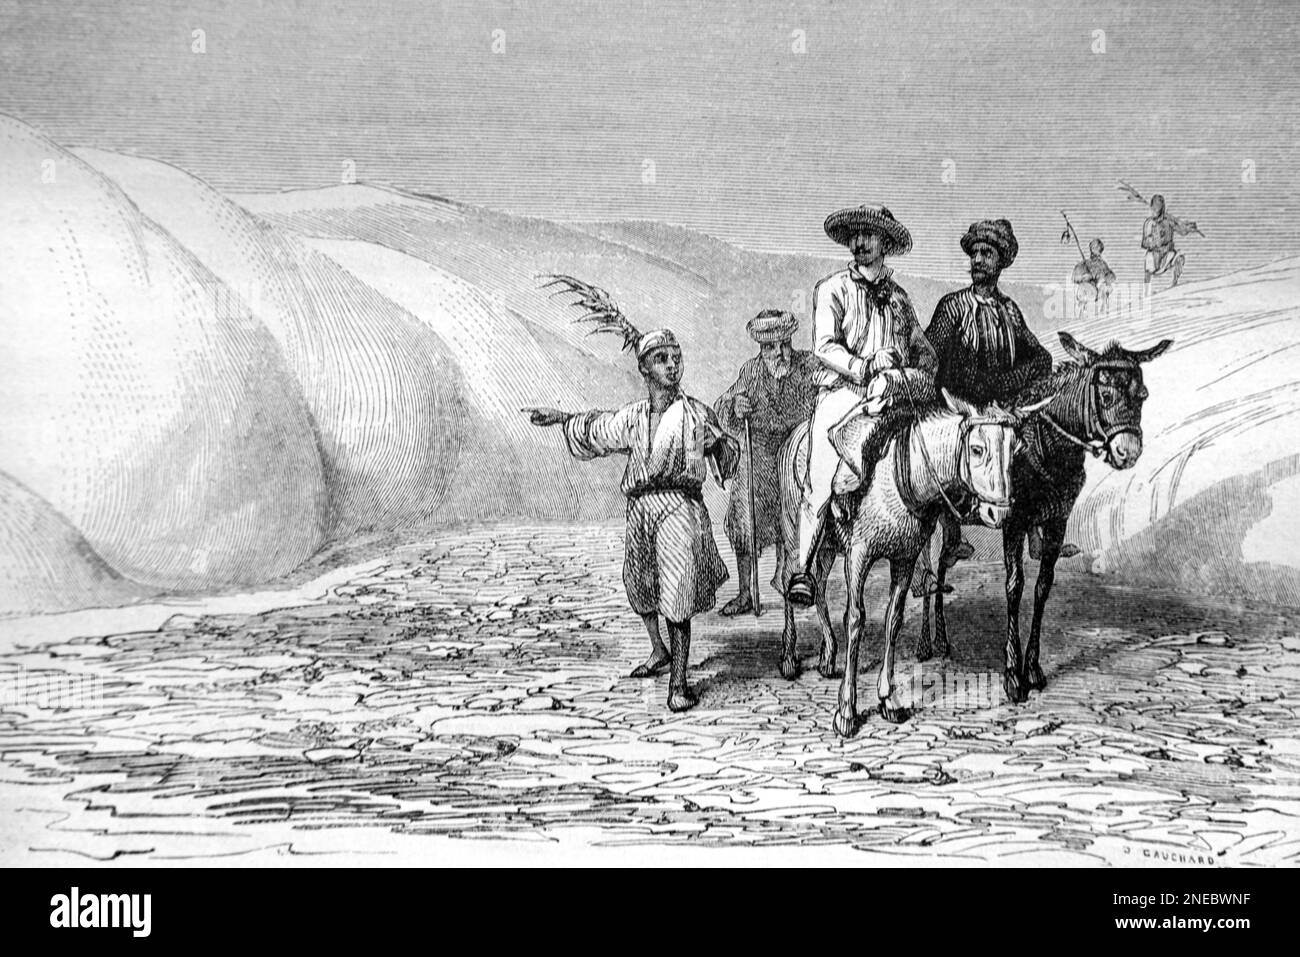 Reisende, die die Thebaid oder die Thebais-Wüste, eine Region des alten Ägypten, um das antike Theben oder Luxur, Ägypten, überqueren. Vintage-Gravur oder Abbildung 1862 Stockfoto